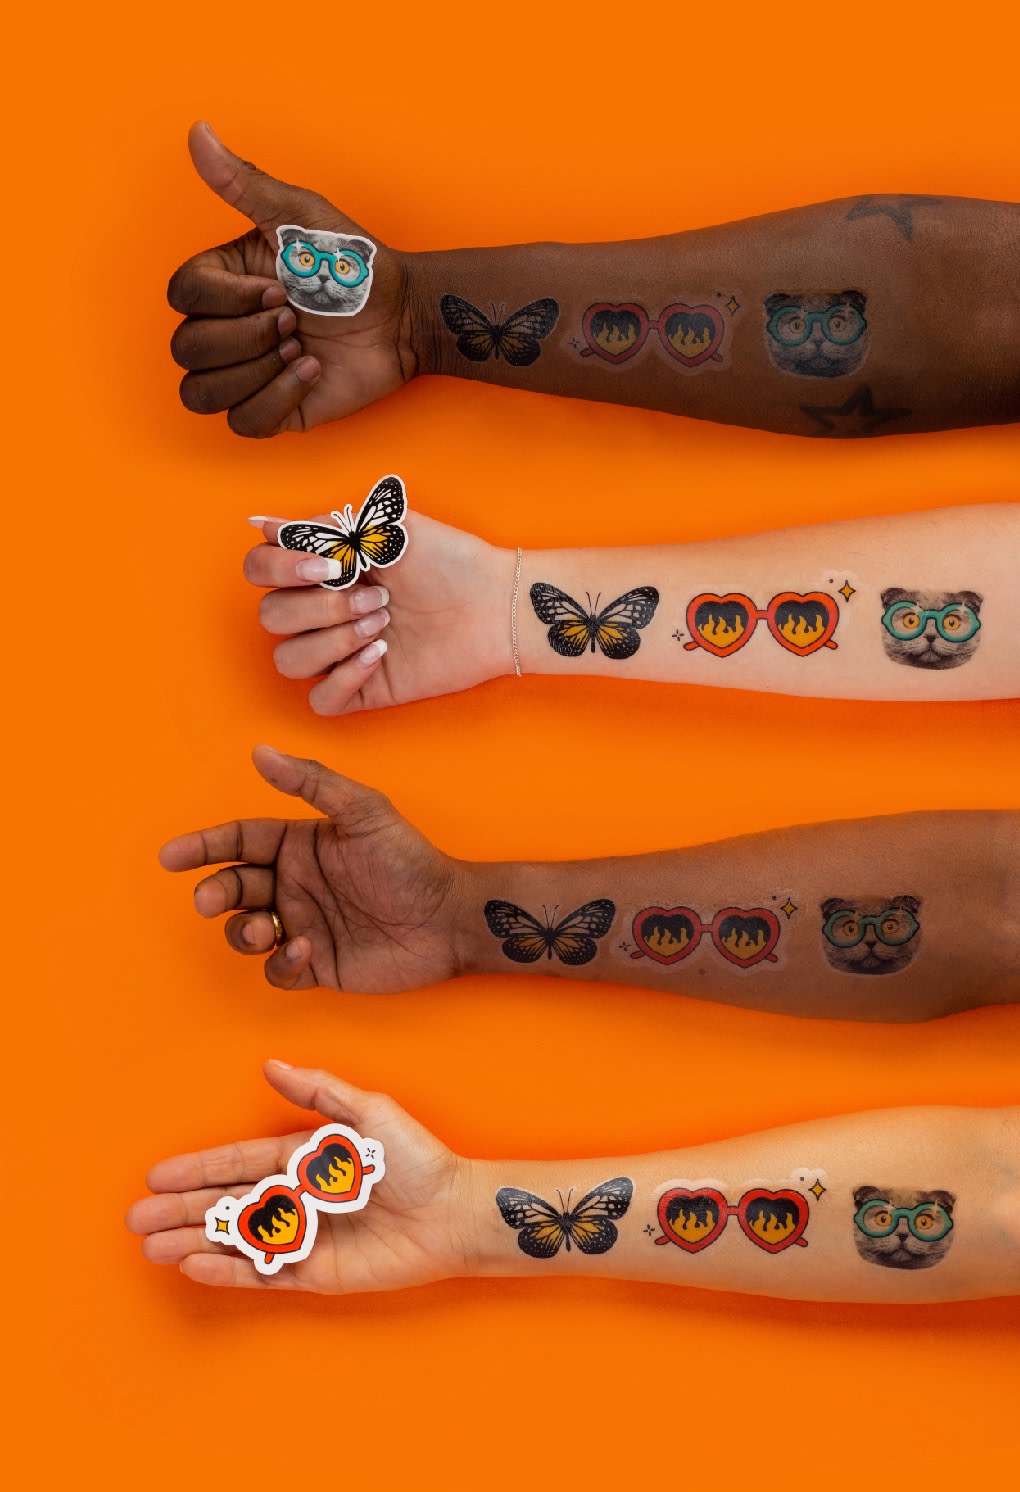 Hoe nep tattoos eruitzien op verschillende soorten huidskleur